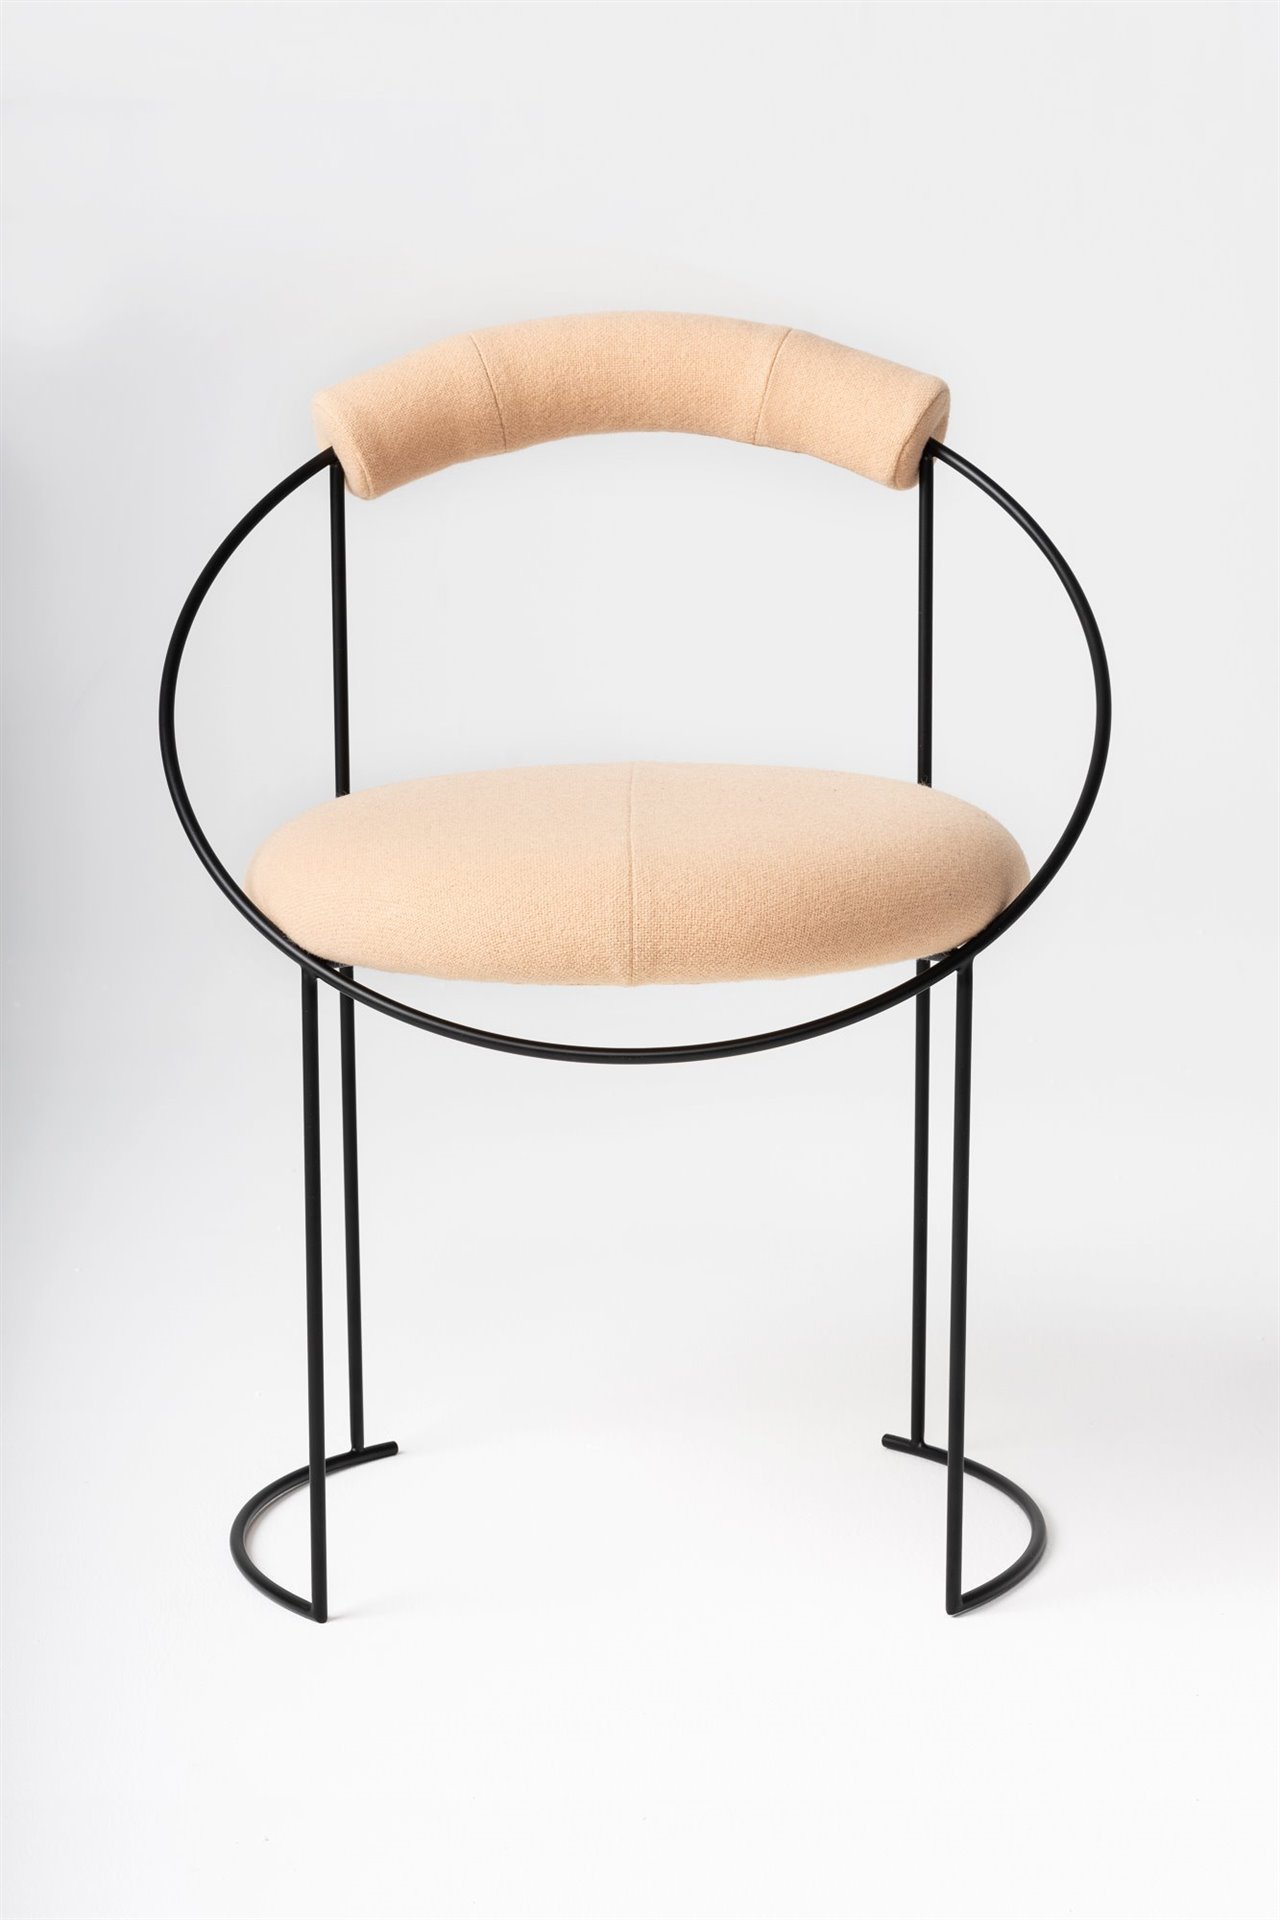 El color suave de la superficie blanda de la silla proporciona una estética muy elegante. 